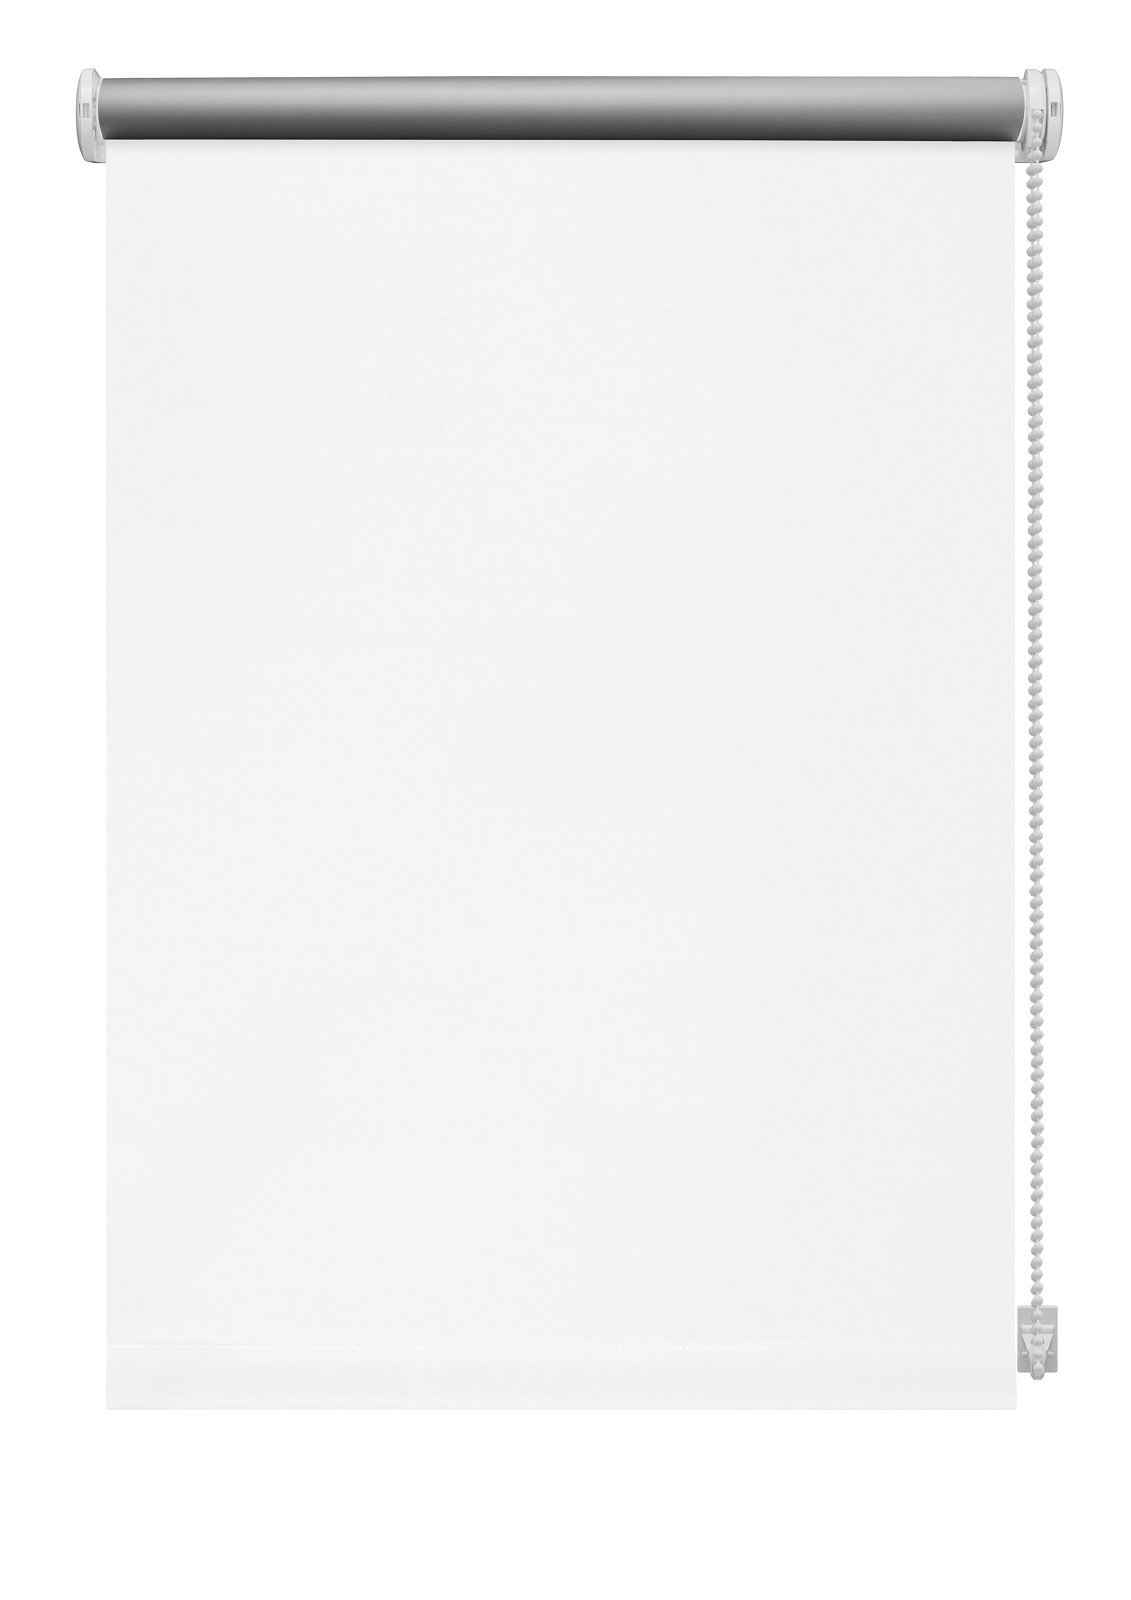 Klasikinė ritininė užuolaida THERMO 905, baltos sp., 220 x 210 cm - 2